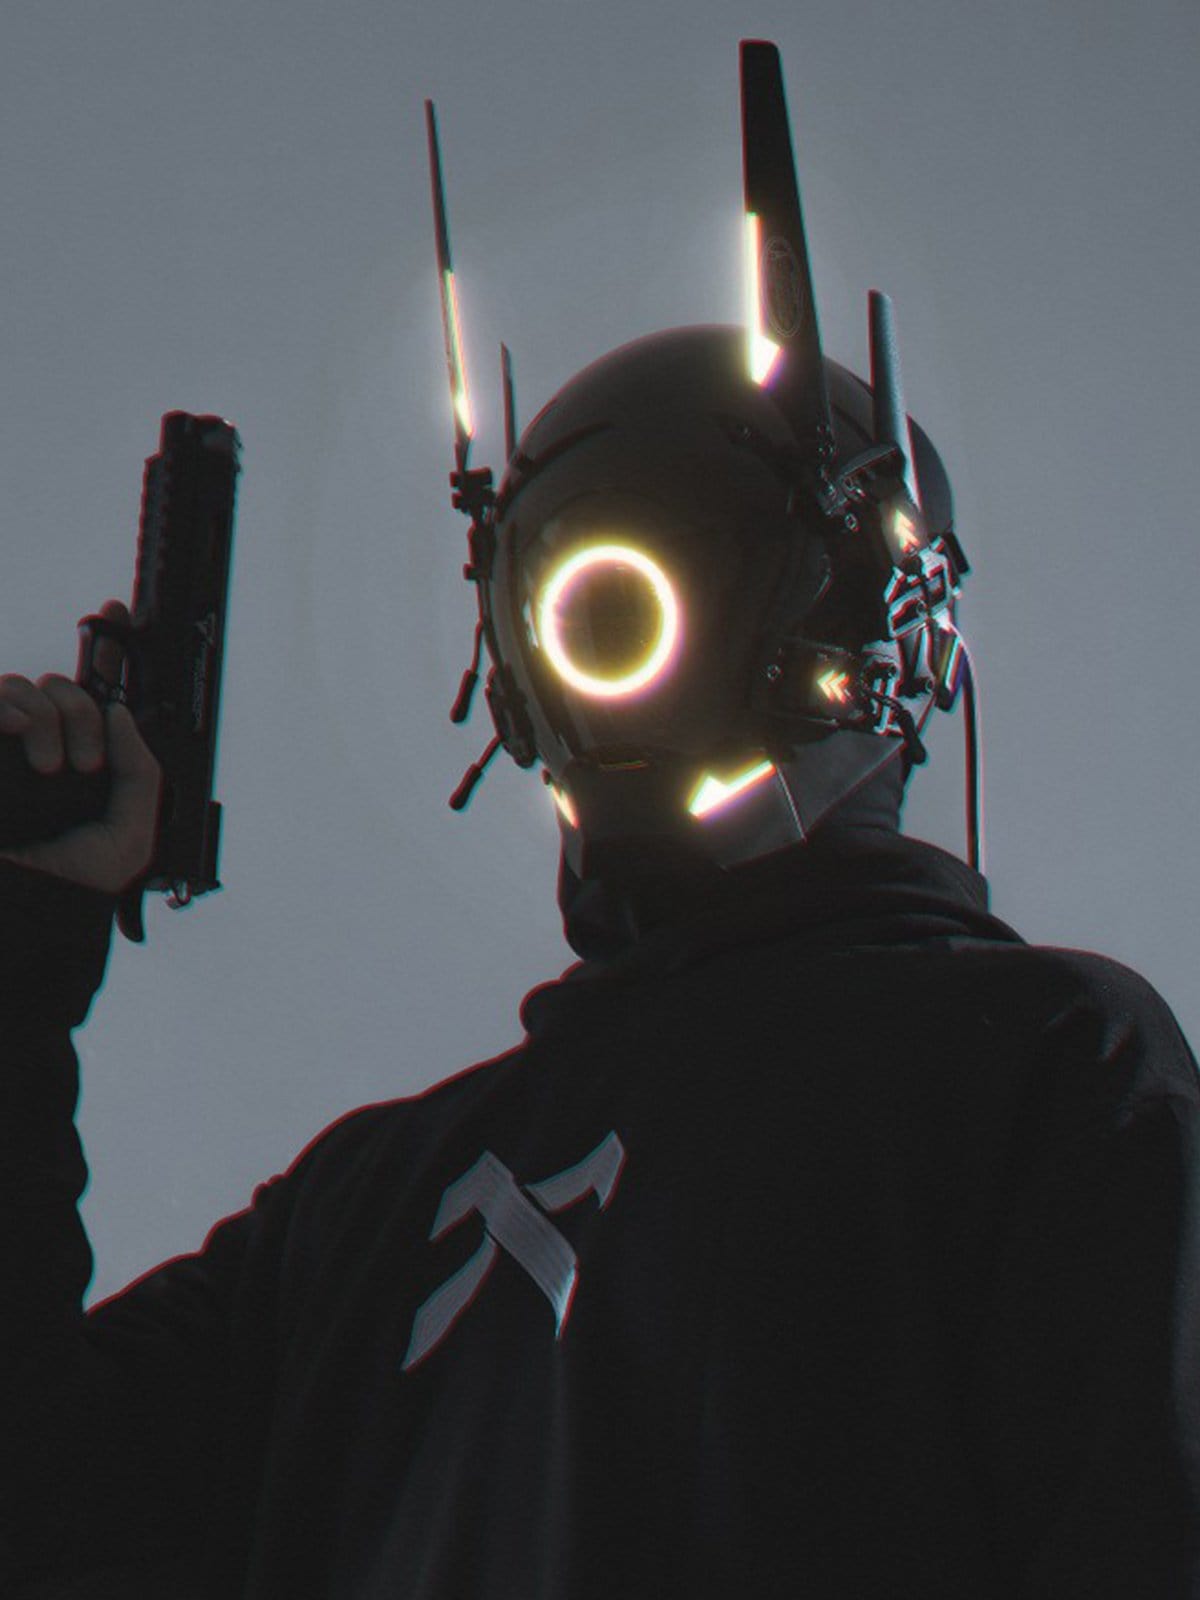 [Advanced Series] Cyberpunk Glowing Circle Mask